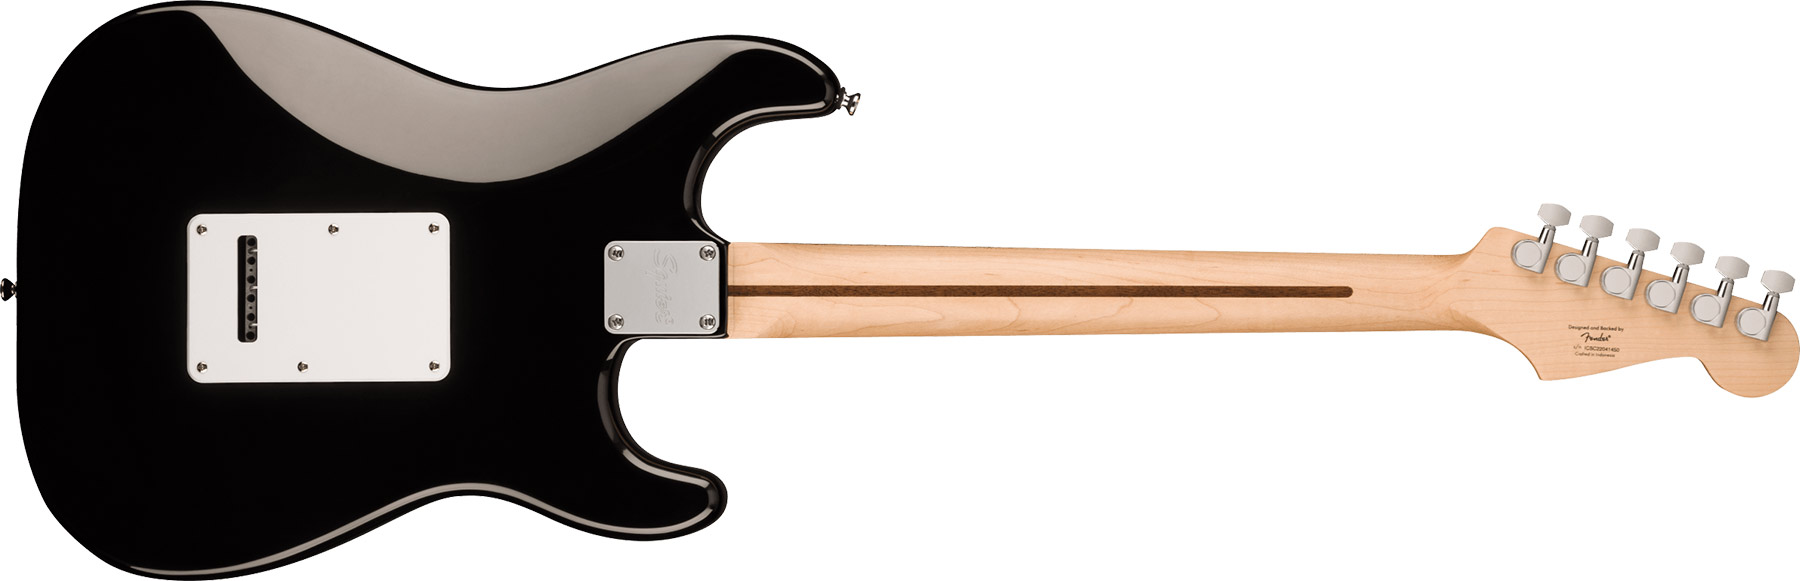 Squier Strat Sonic Lh Gaucher 3s Trem Mn - Black - E-Gitarre für Linkshänder - Variation 1